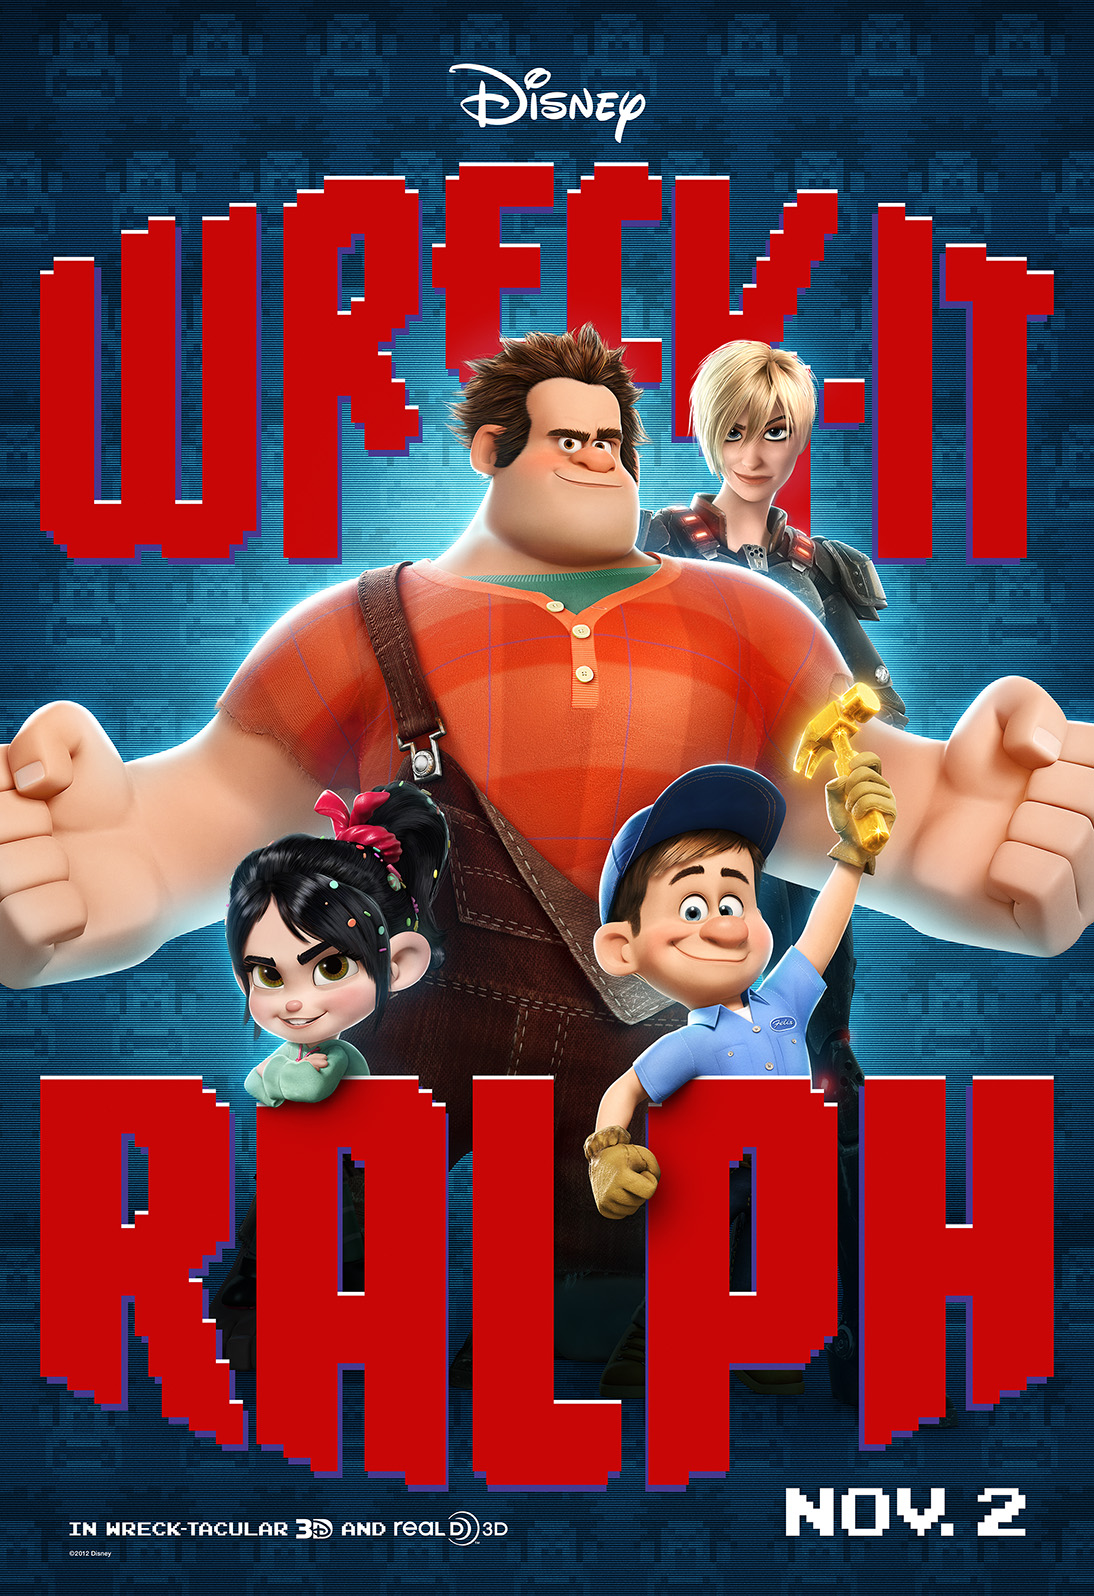 Wreck-it Ralph Sneak Preview Review